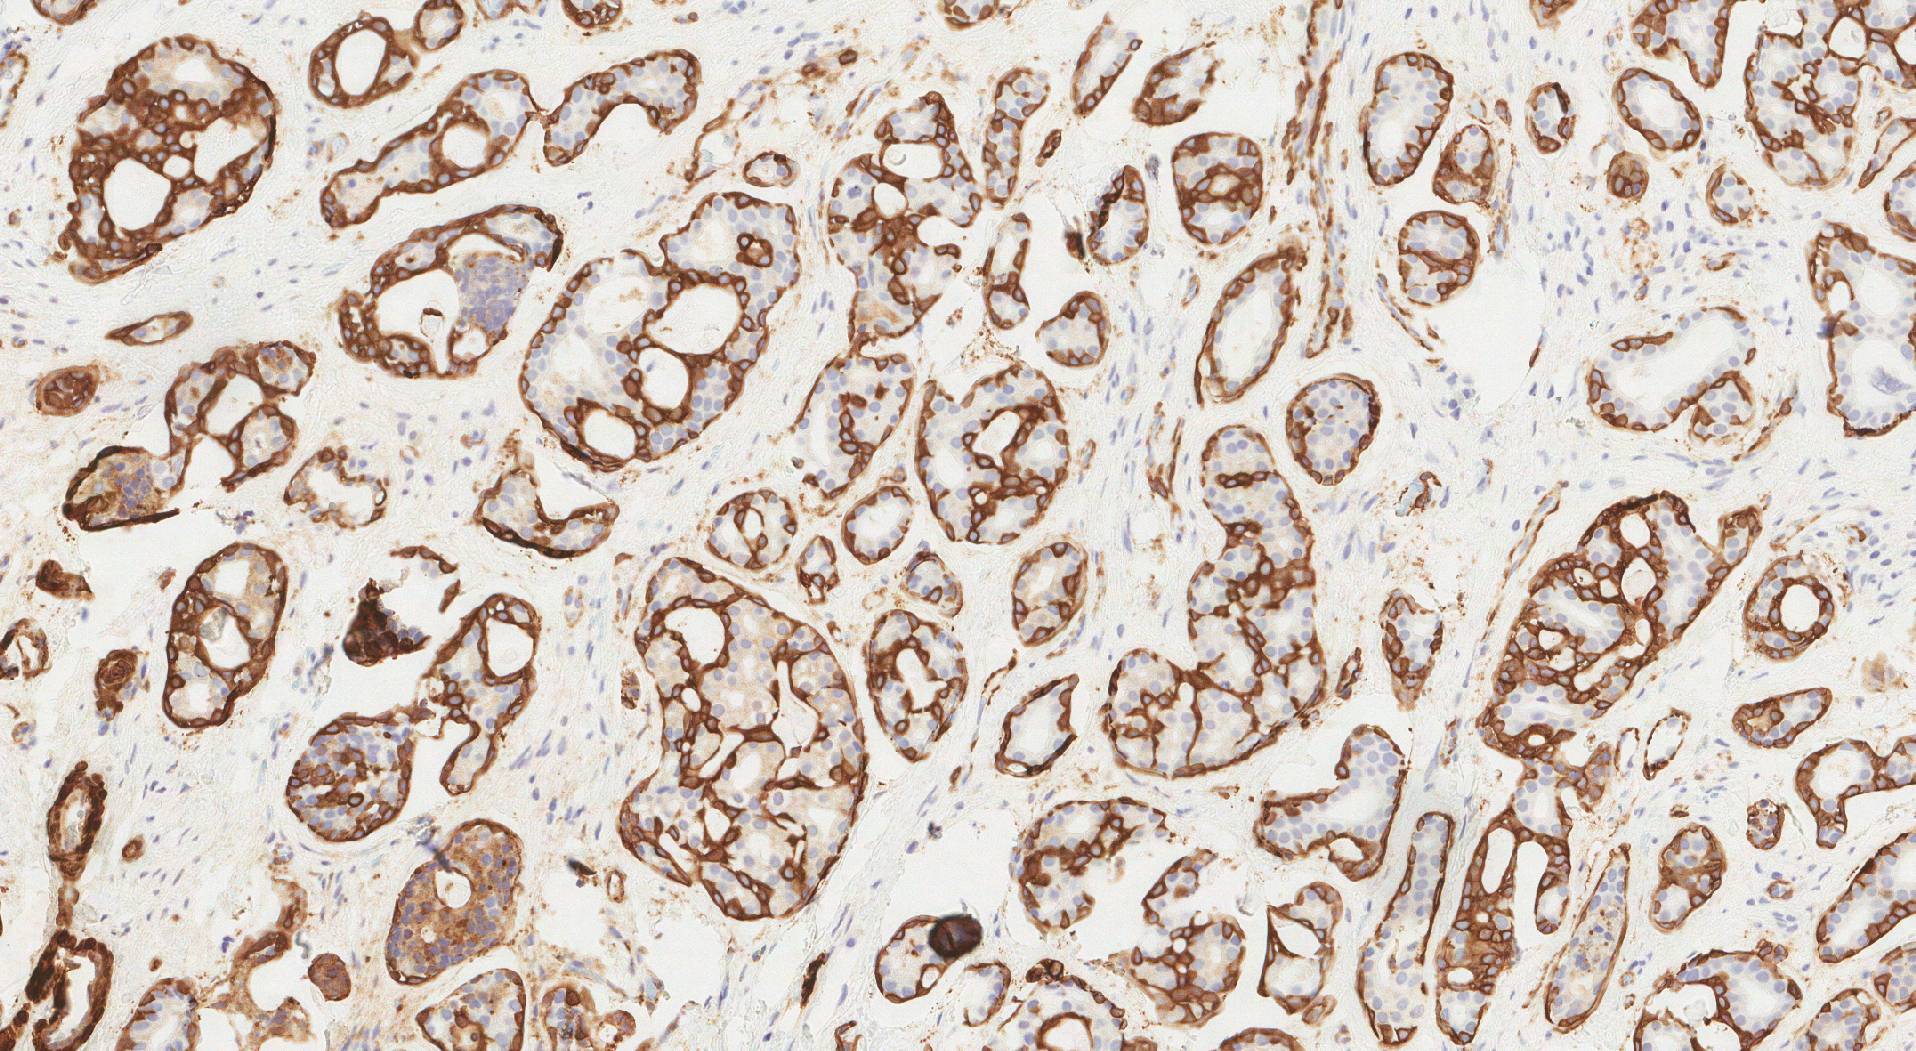 Ezen a képen a simaizom aktin pozitív sejtjei (barna) láthatók az immunhisztokémiával kiemelve.